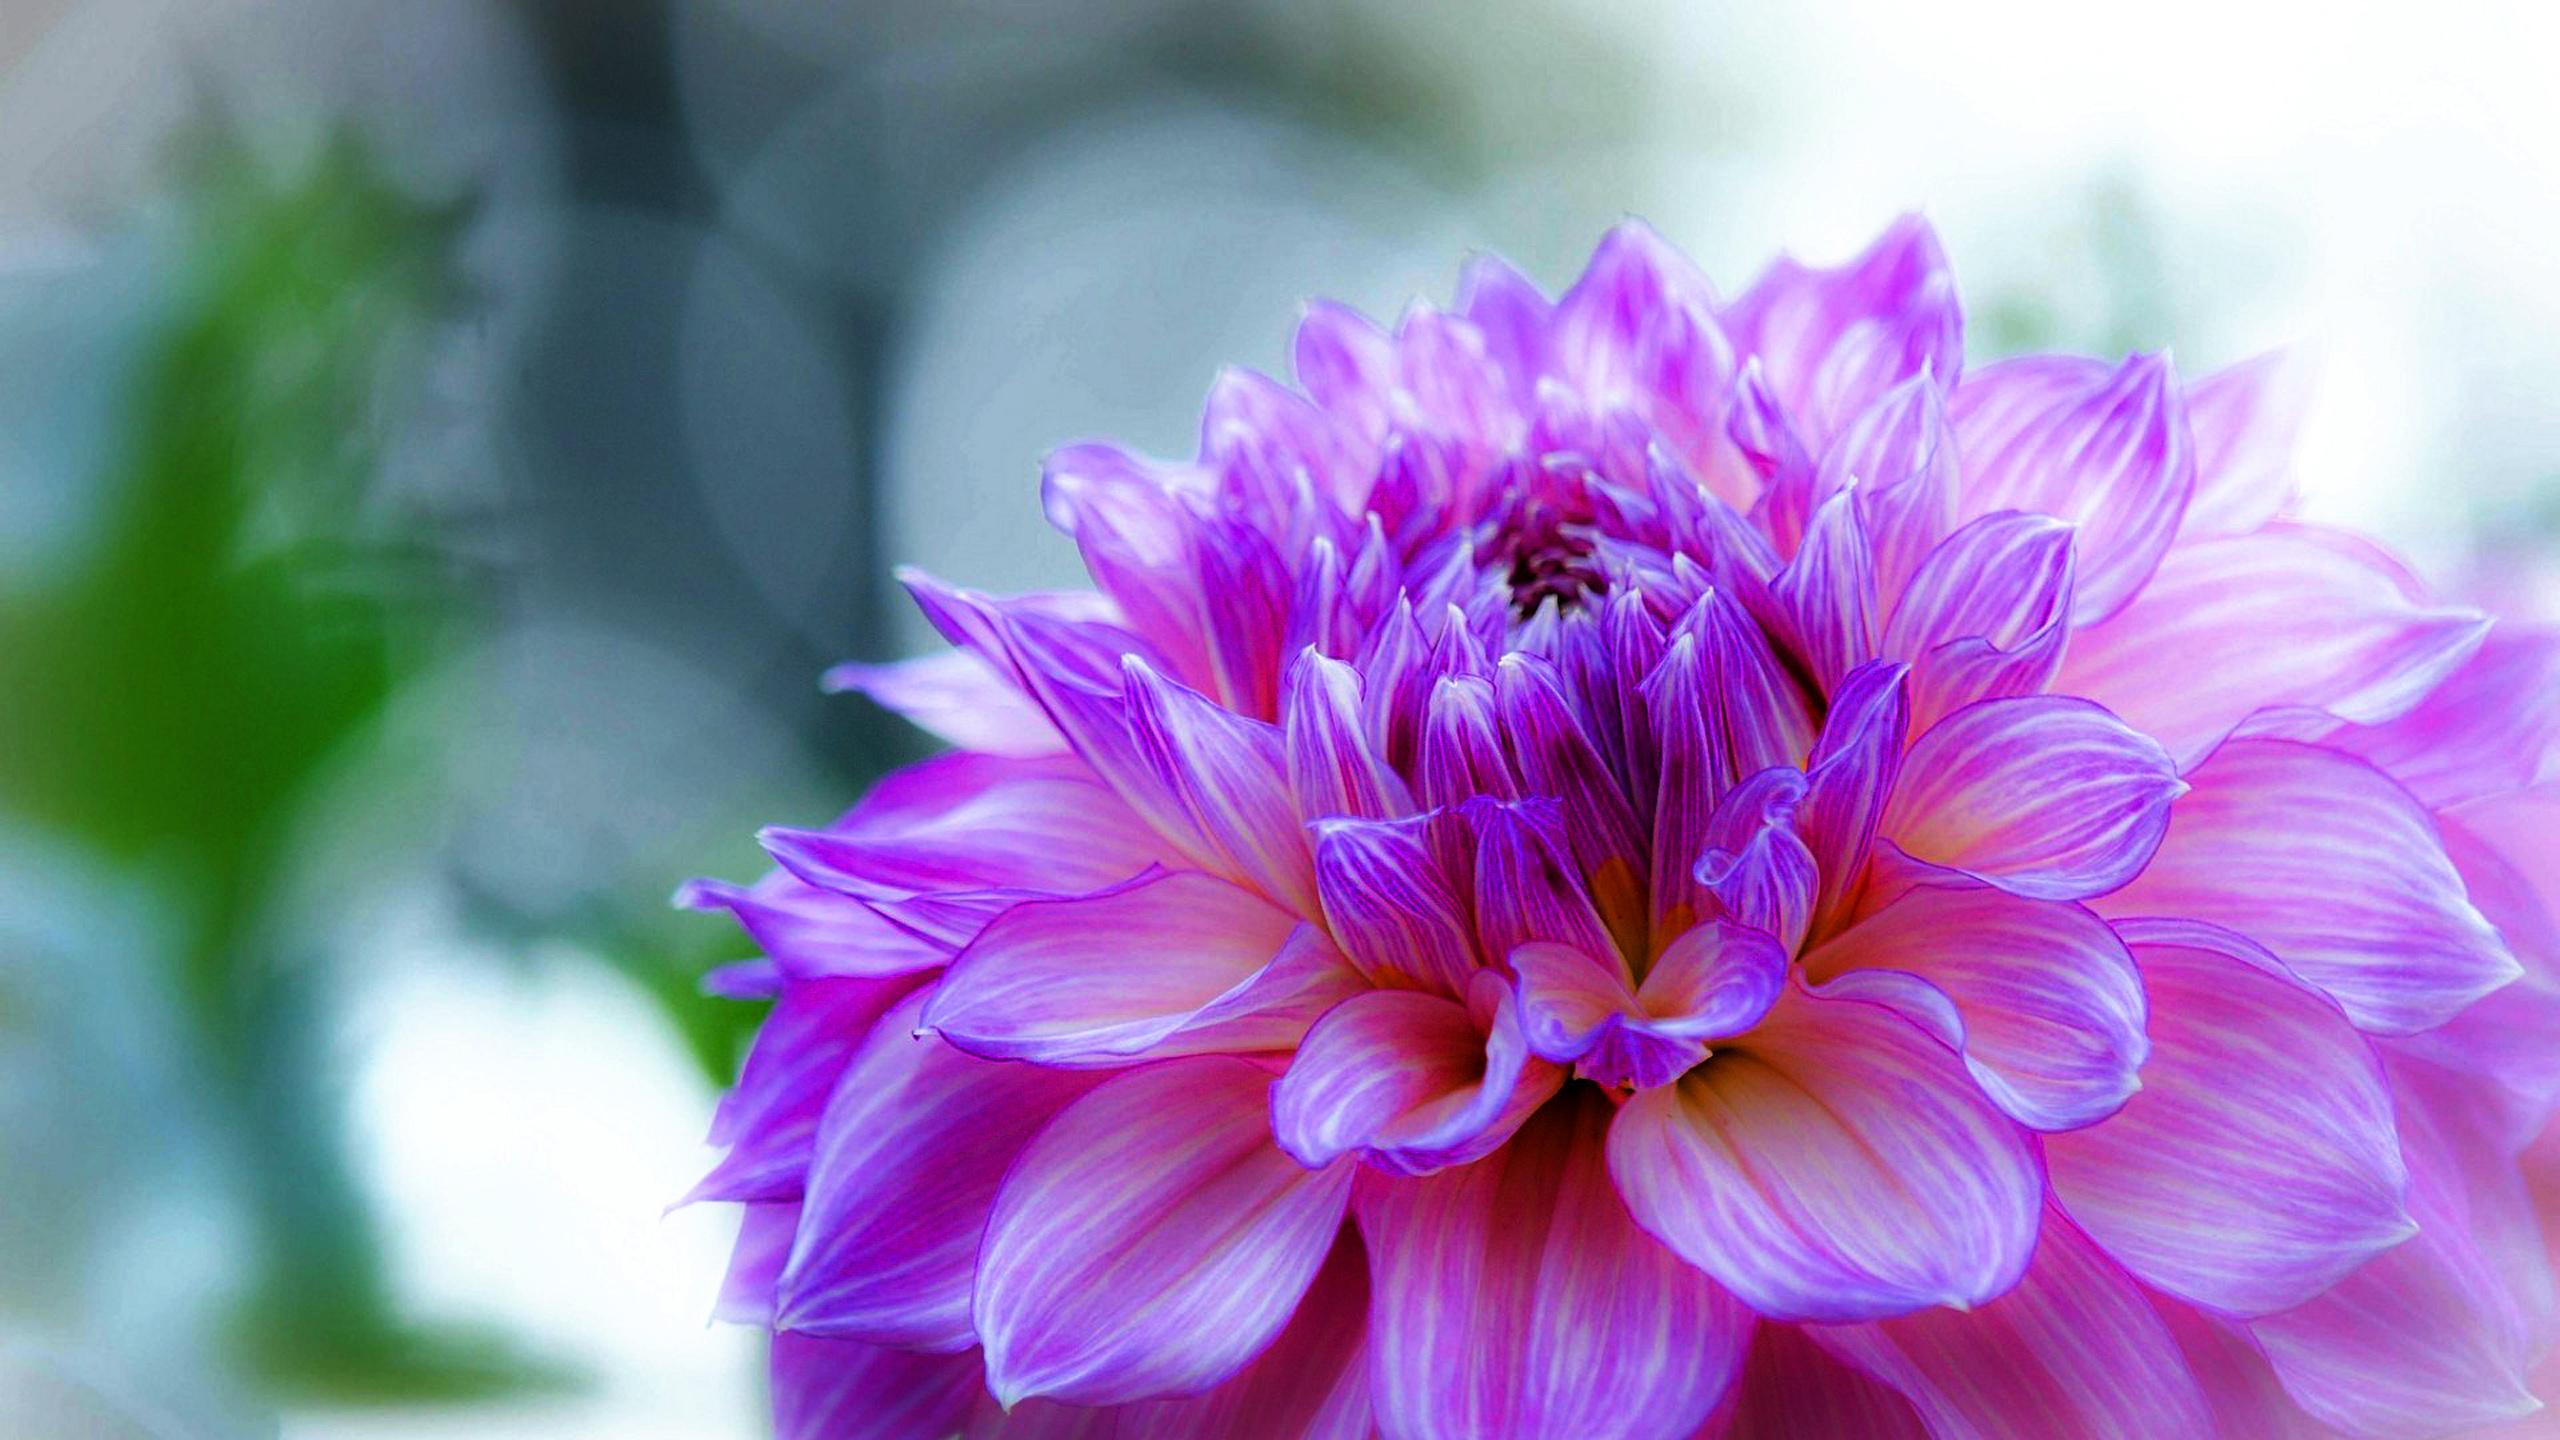 2560 x 1440 · jpeg - Dahlia Delicate Purple Flower Desktop Wallpaper Hd 2560x1440 ...